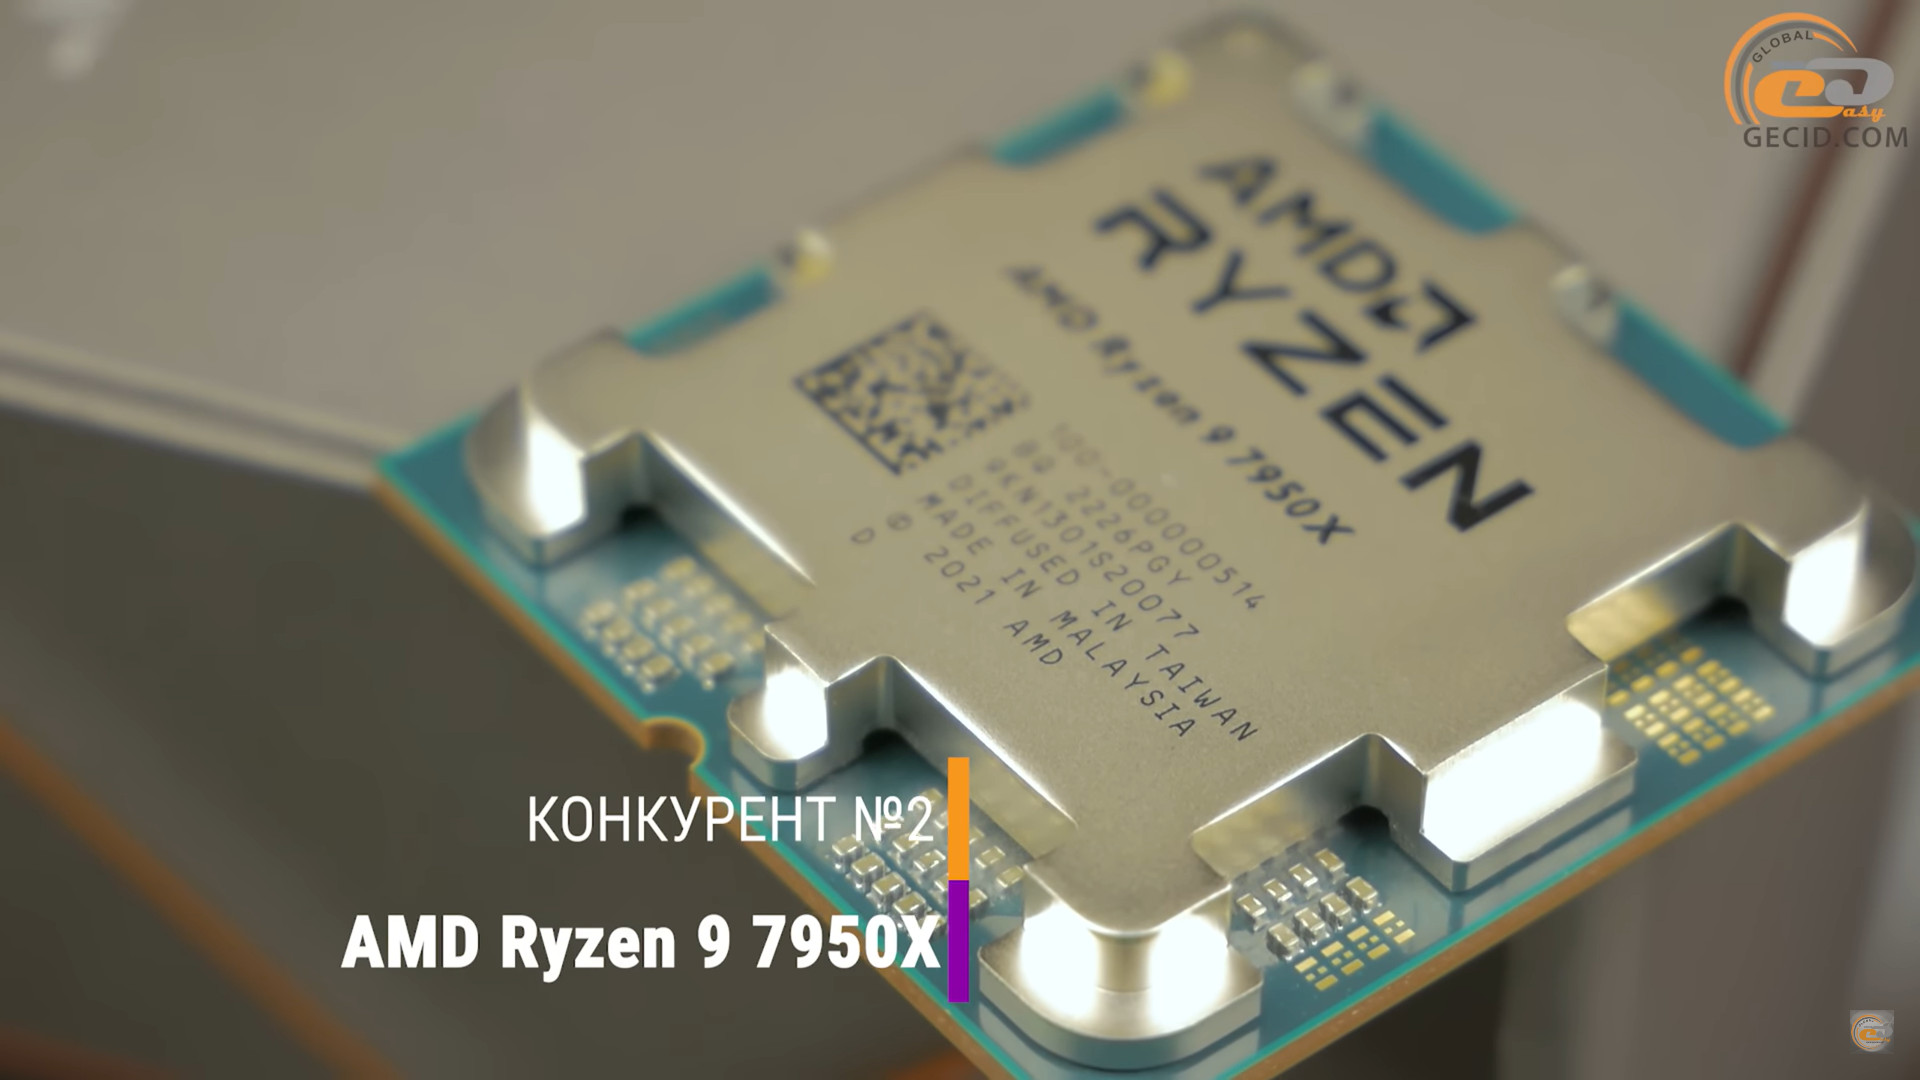 Ryzen 9 7950x oem. Intel Core i9 13900. Intel Core i9 10900kf тест. Intel Box Cooler i9 13900 Fan. Фото Ryzen 7950x.